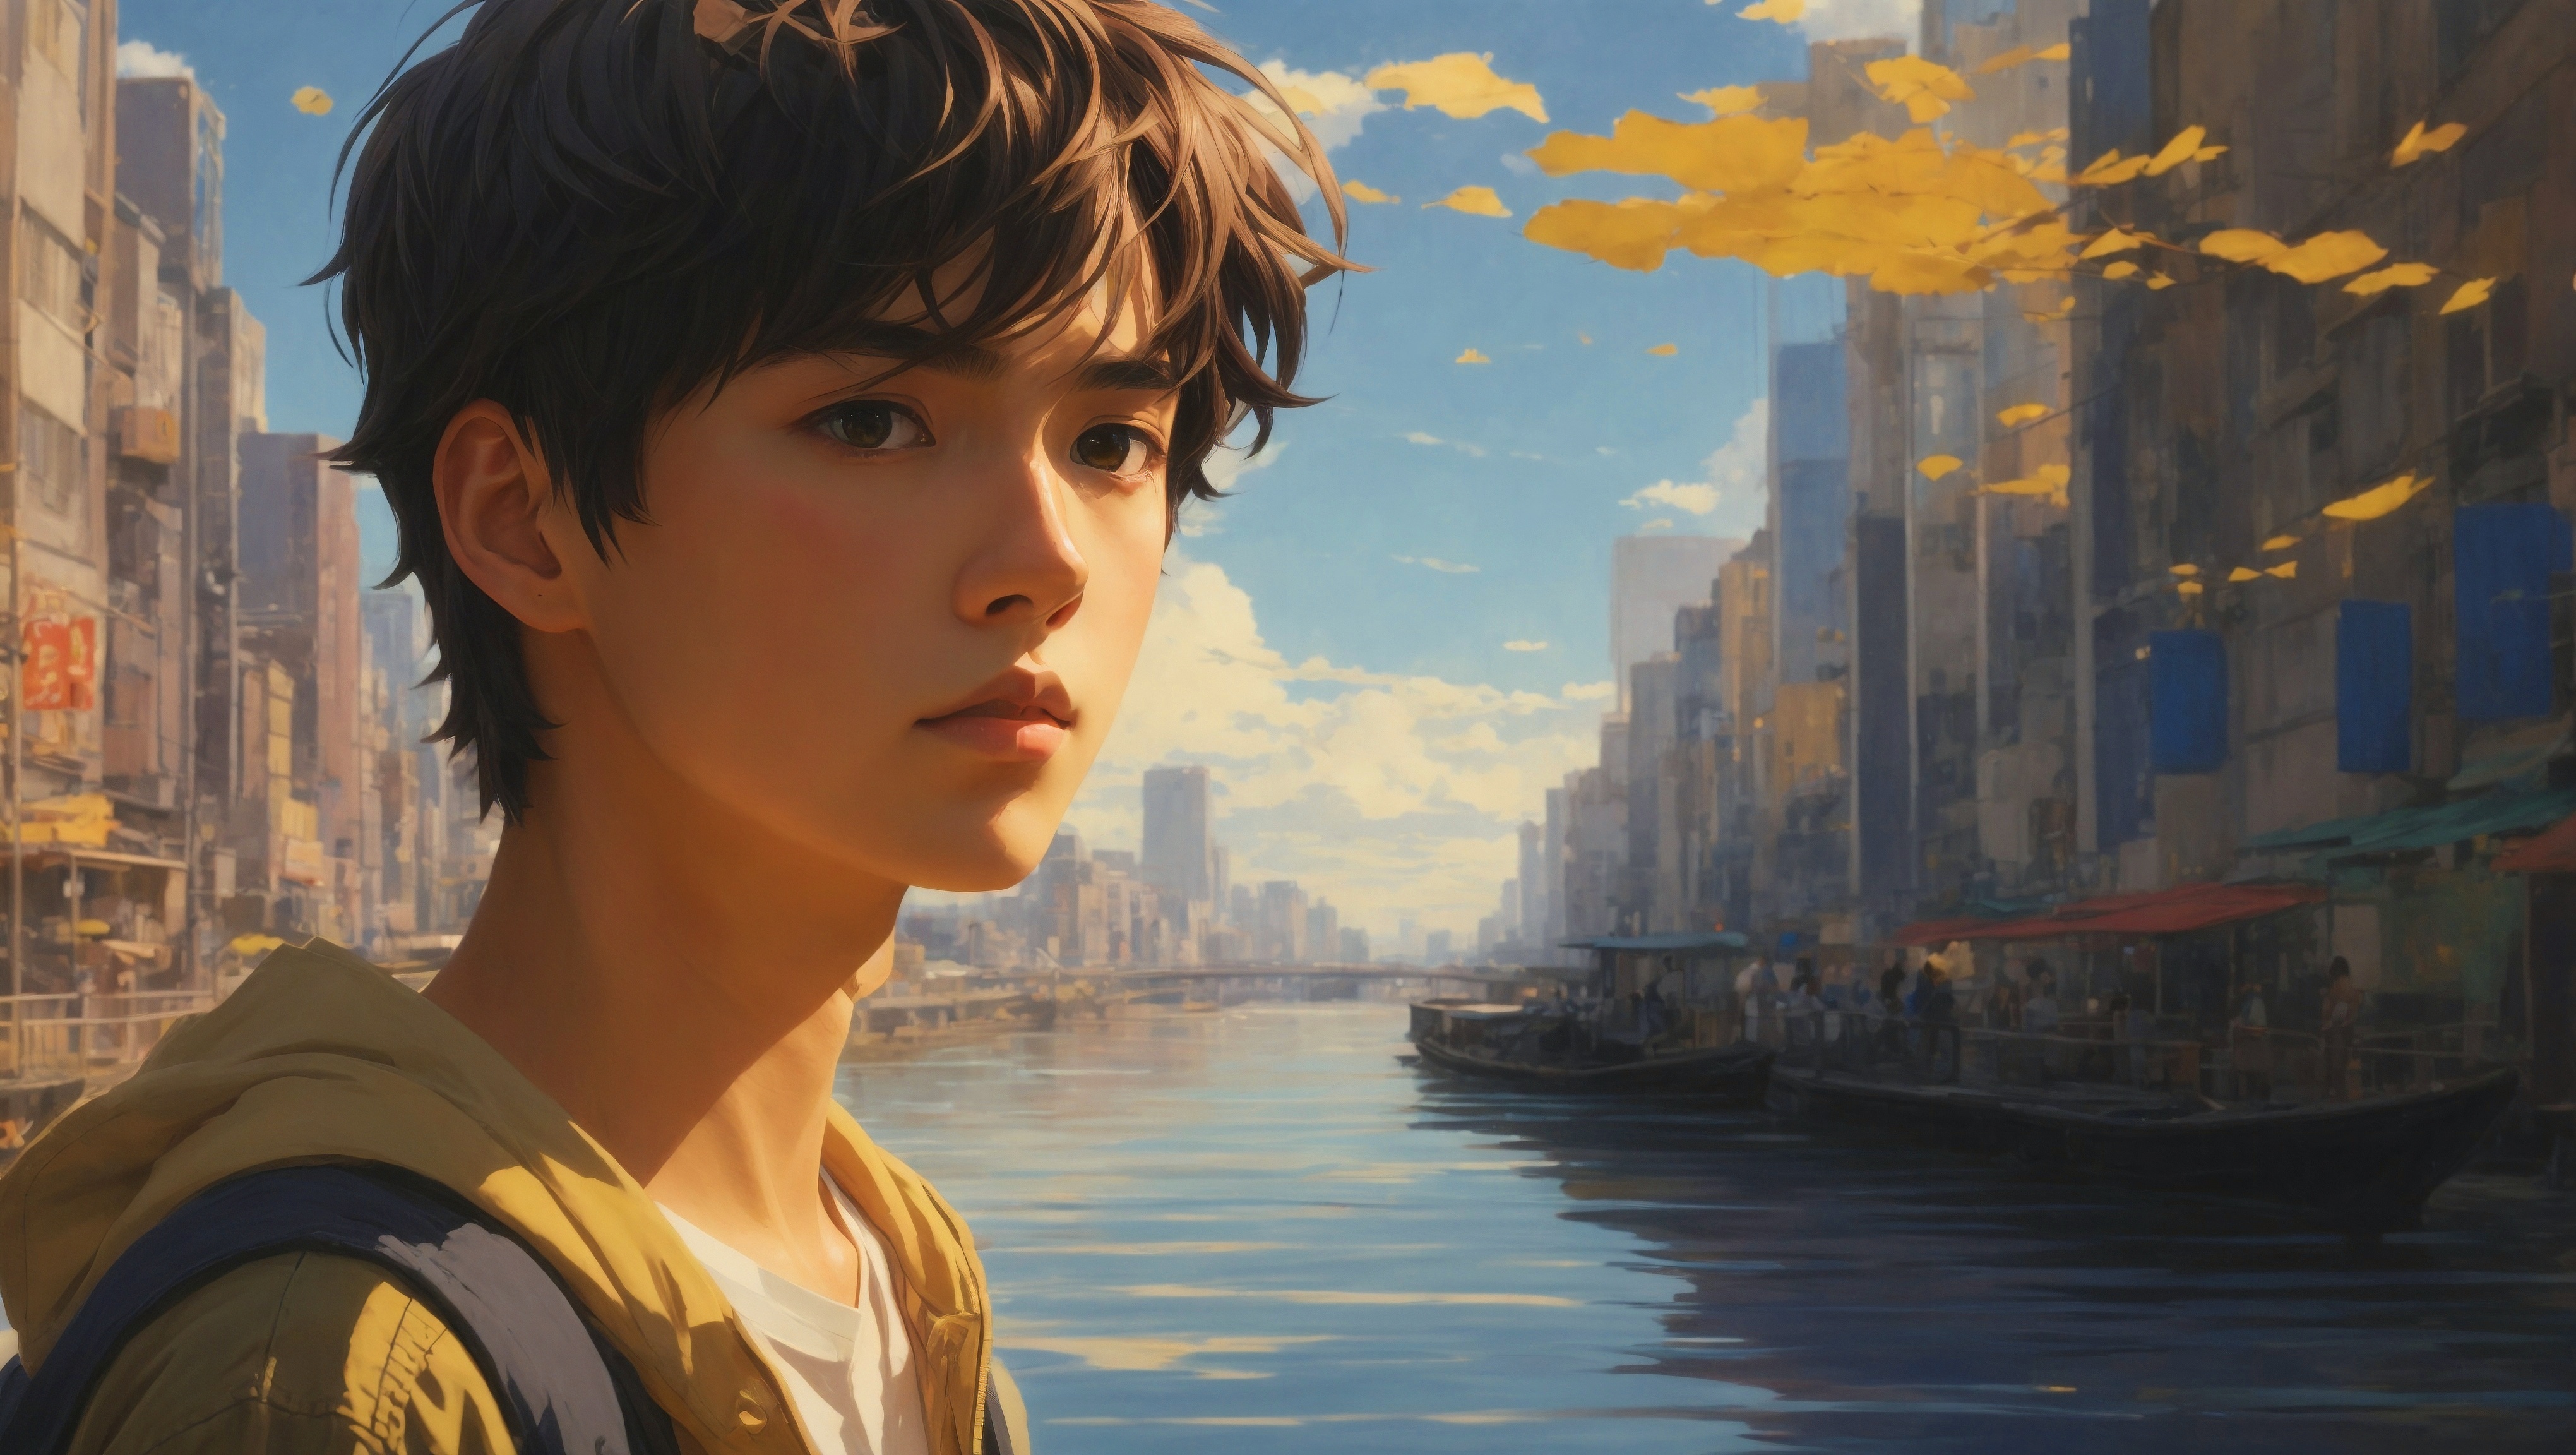 Бесплатное фото Картина с изображением мальчика в городской среде